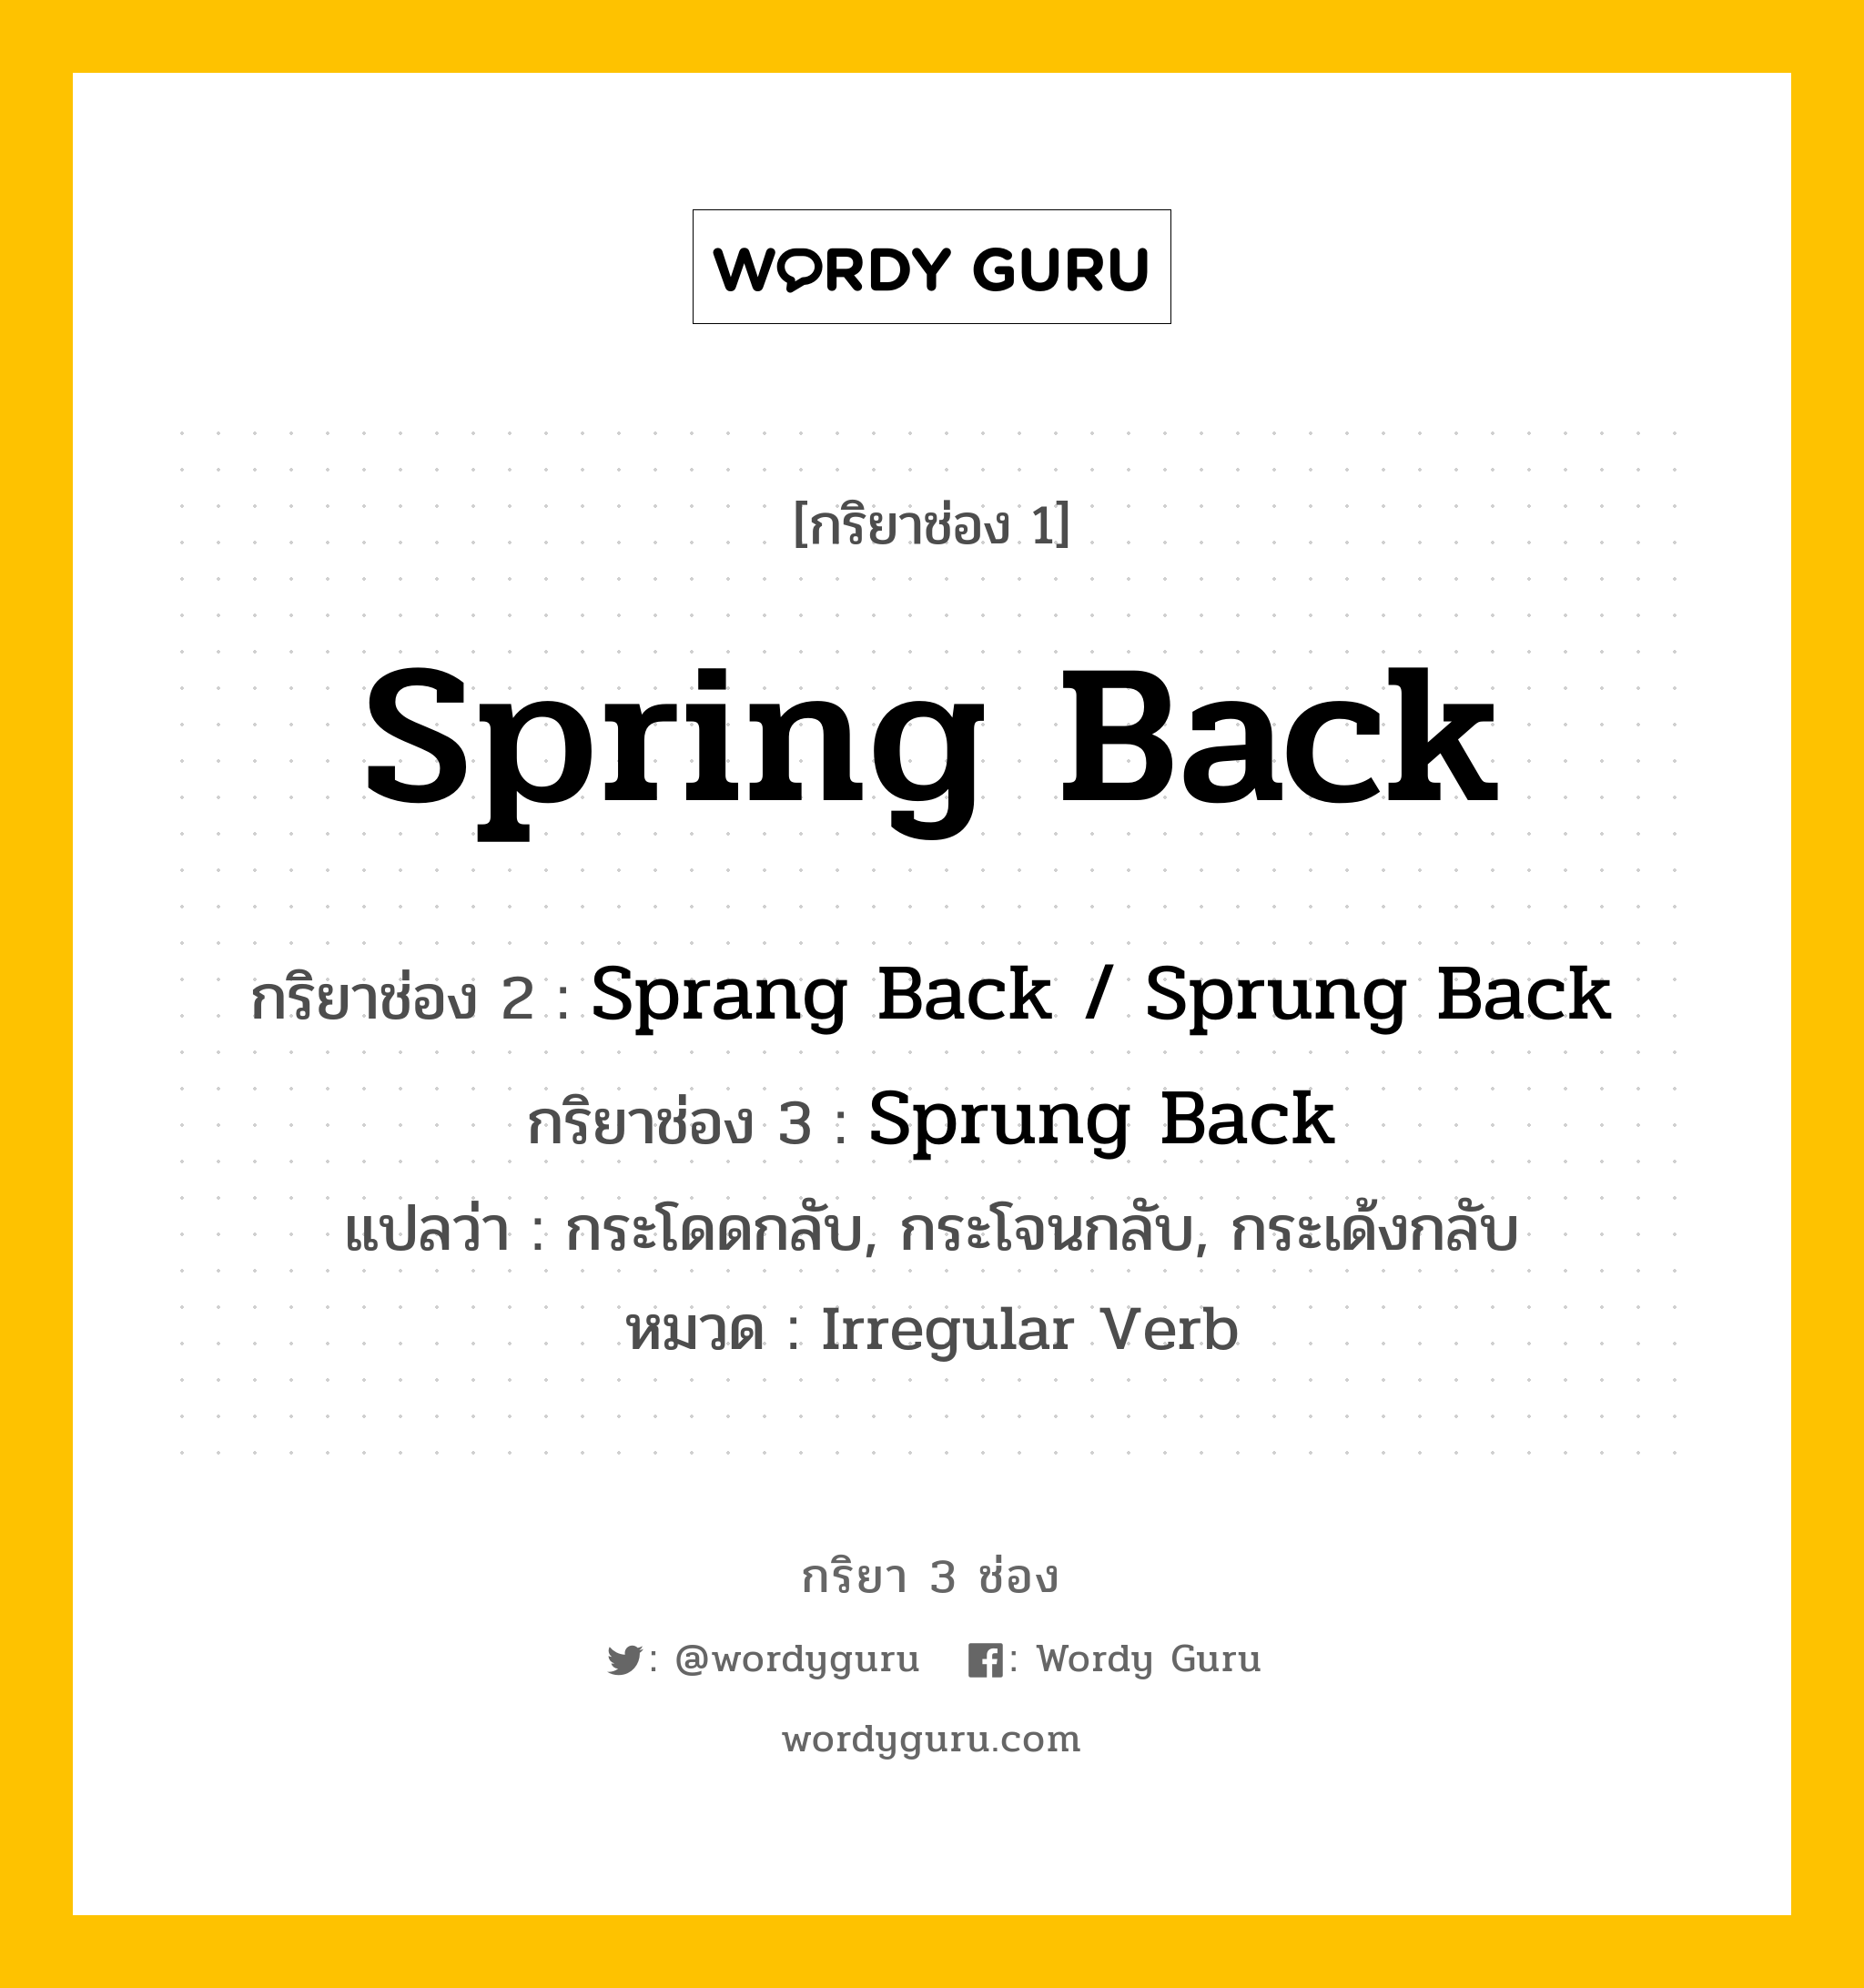 กริยา 3 ช่อง ของ Spring Back คืออะไร?, กริยาช่อง 1 Spring Back กริยาช่อง 2 Sprang Back / Sprung Back กริยาช่อง 3 Sprung Back แปลว่า กระโดดกลับ, กระโจนกลับ, กระเด้งกลับ หมวด Irregular Verb หมวด Irregular Verb